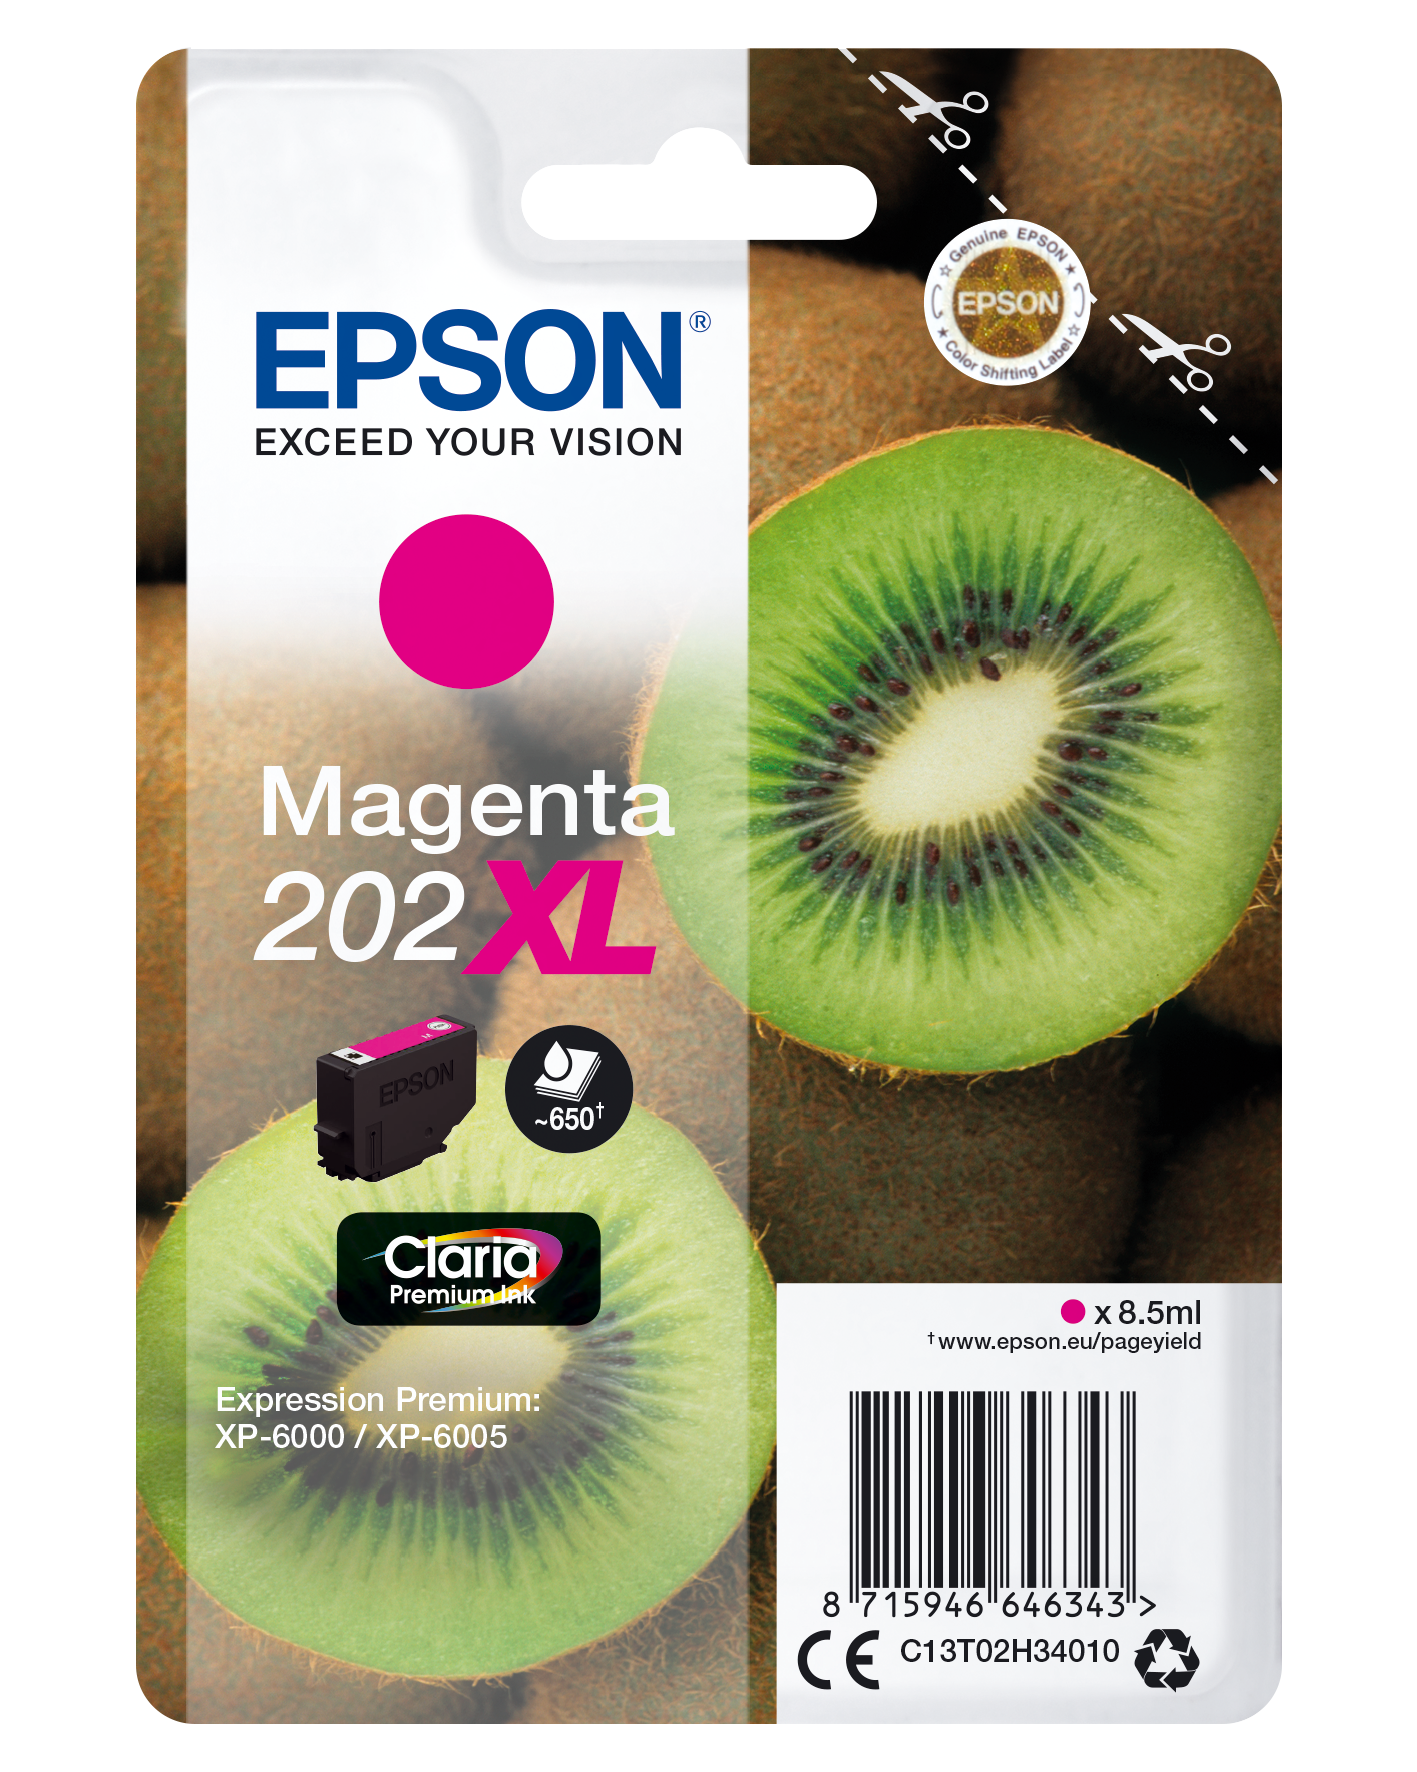 Cartouches Epson Expression Premium XP-6105 Pas cher